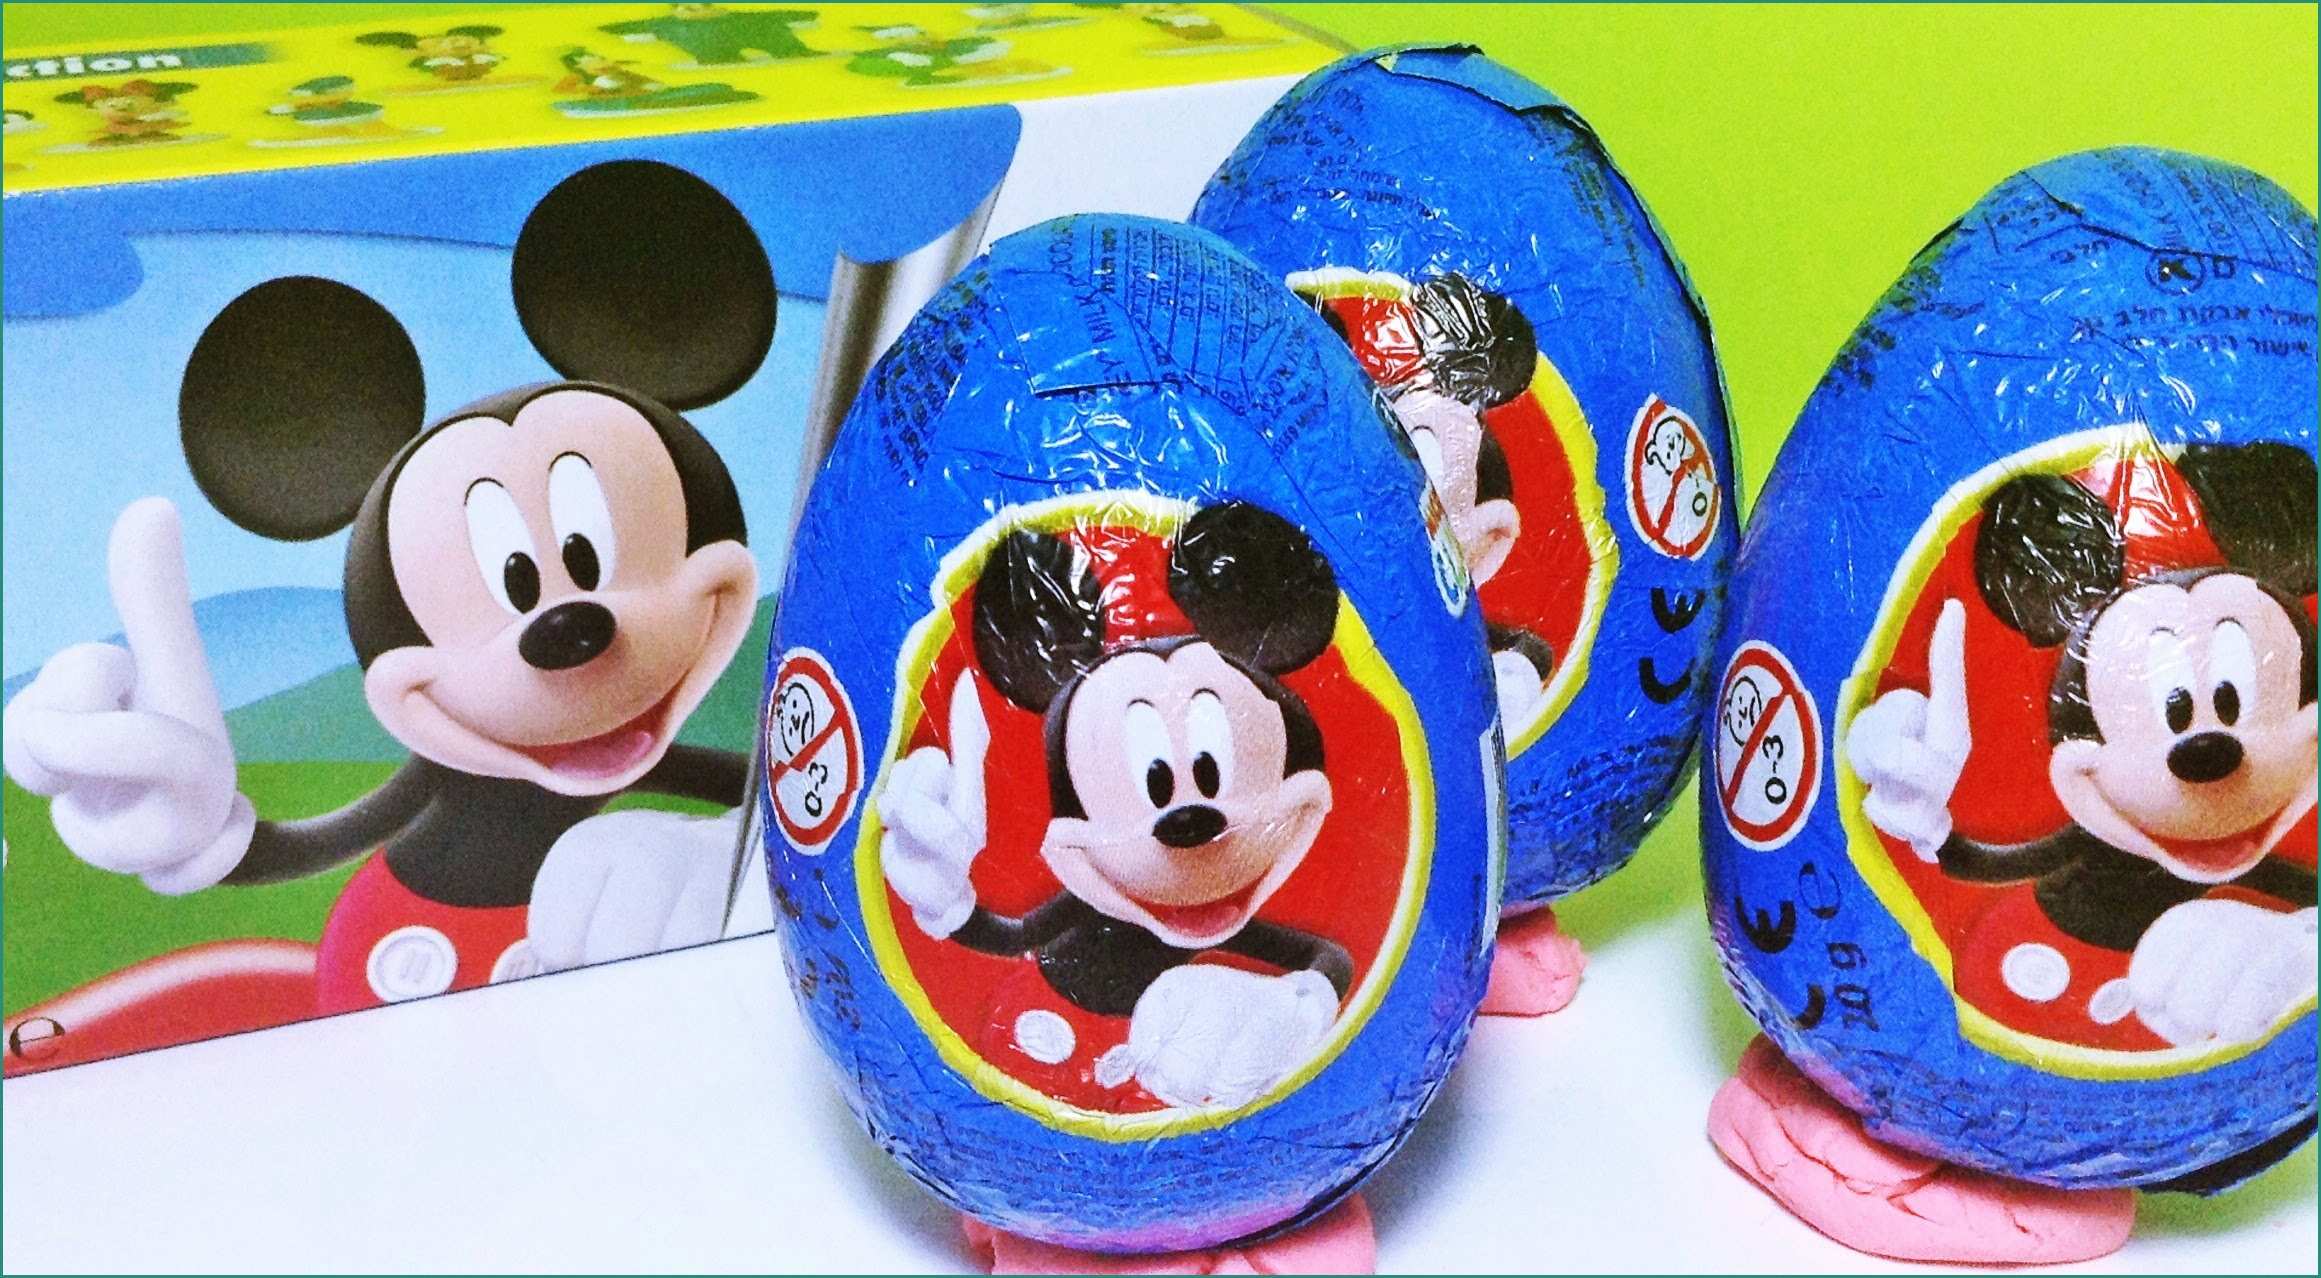 Foto Di Minnie E topolino E Mickey Mouse Clubhouse Surprise Eggs Zaini Surprise Eggs